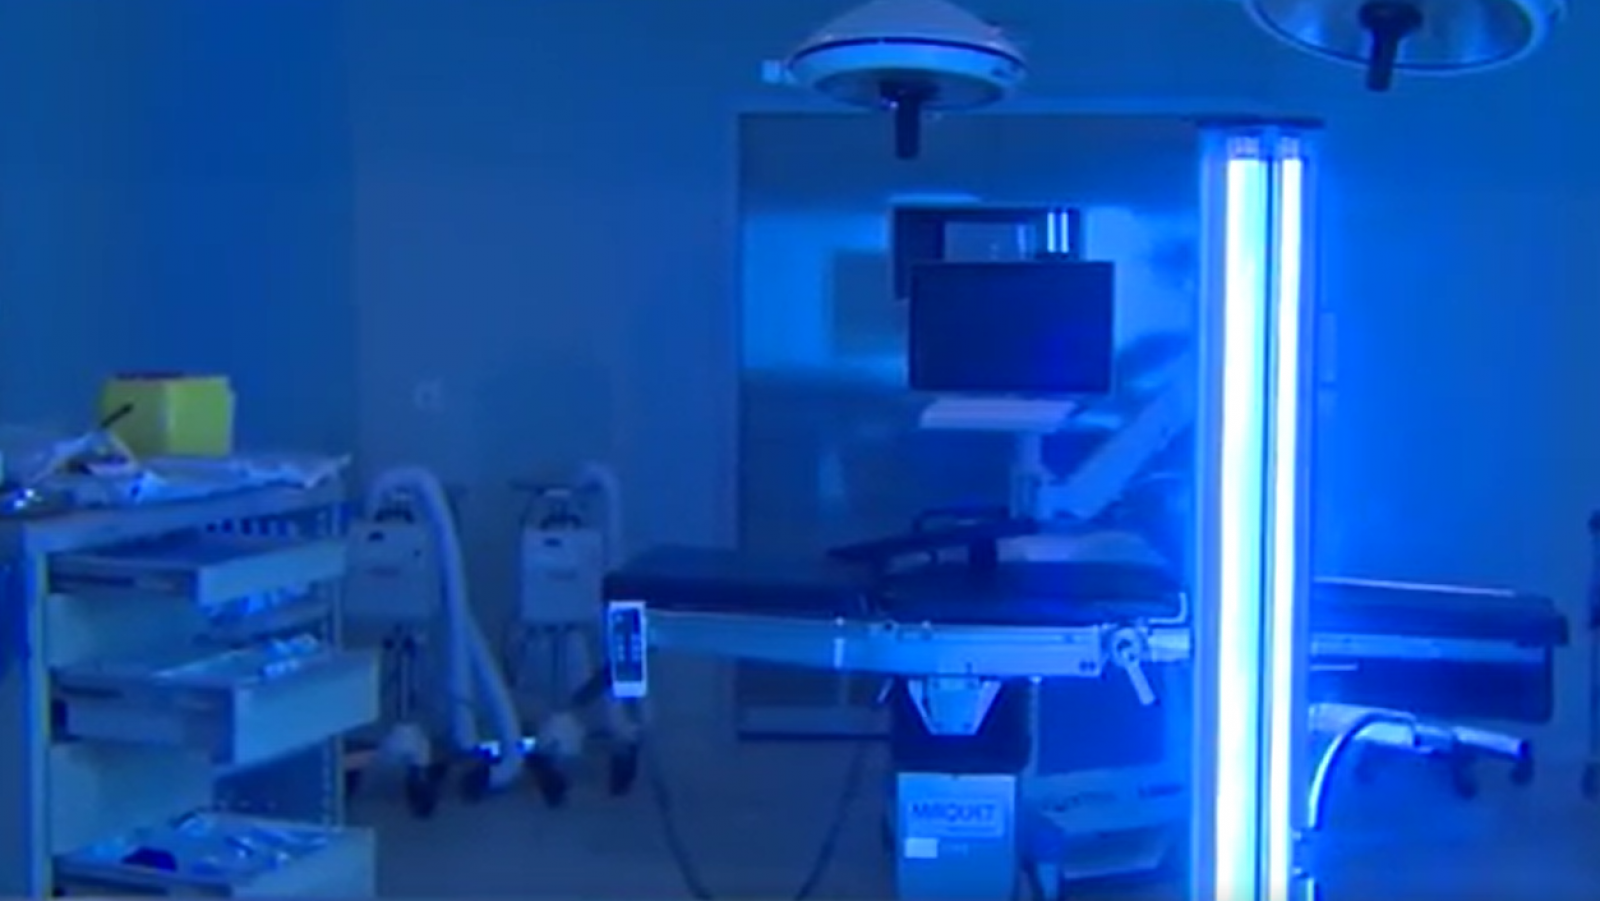 El Hospital de Fuenlabrada utiliza rayos ultravioletas para desinfectar las salas expuestas al coronavirus - RTVE.es